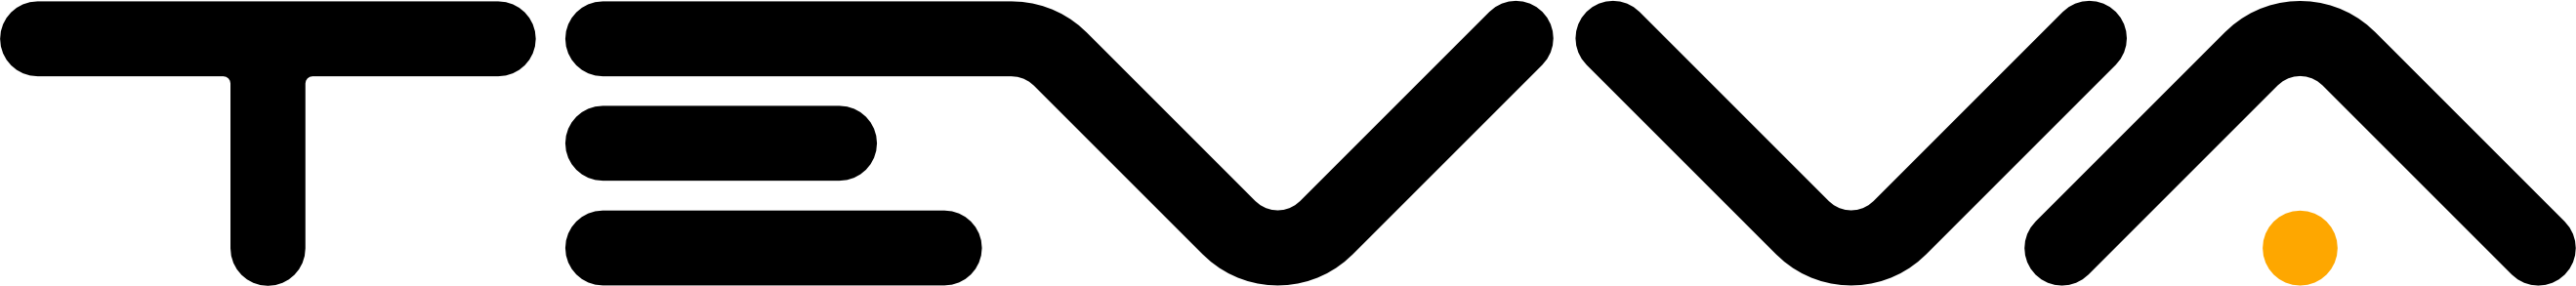 Tevva black logo with orange dot (1)